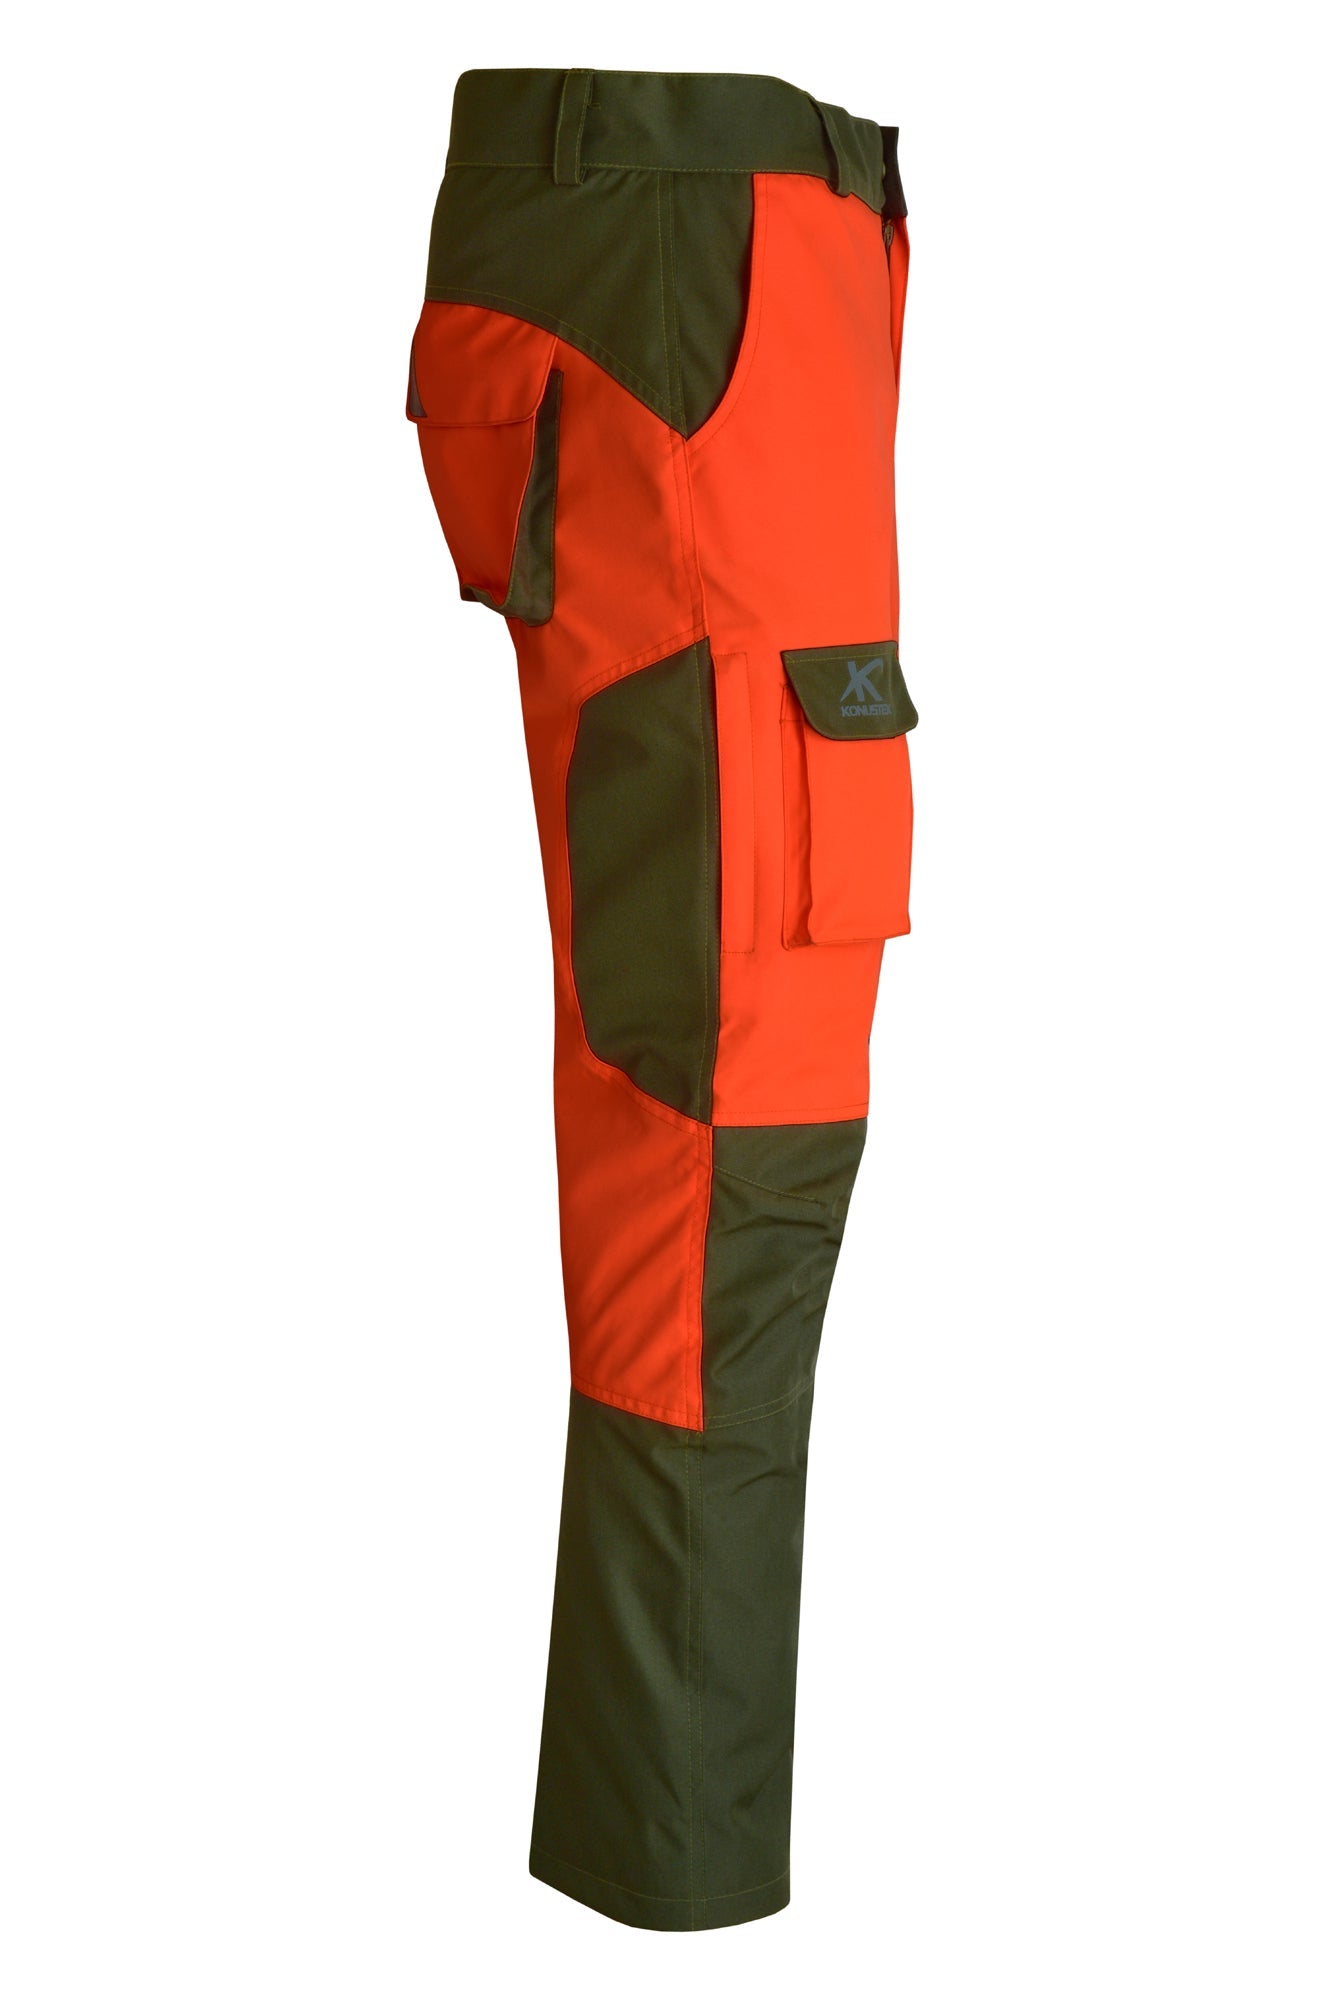 Pantalone da caccia KONUSTEX MAXGAME 2.0 impermeabile con imbottitura rimovibile verde arancione  OnTheRoad.shop - KONUSTEX